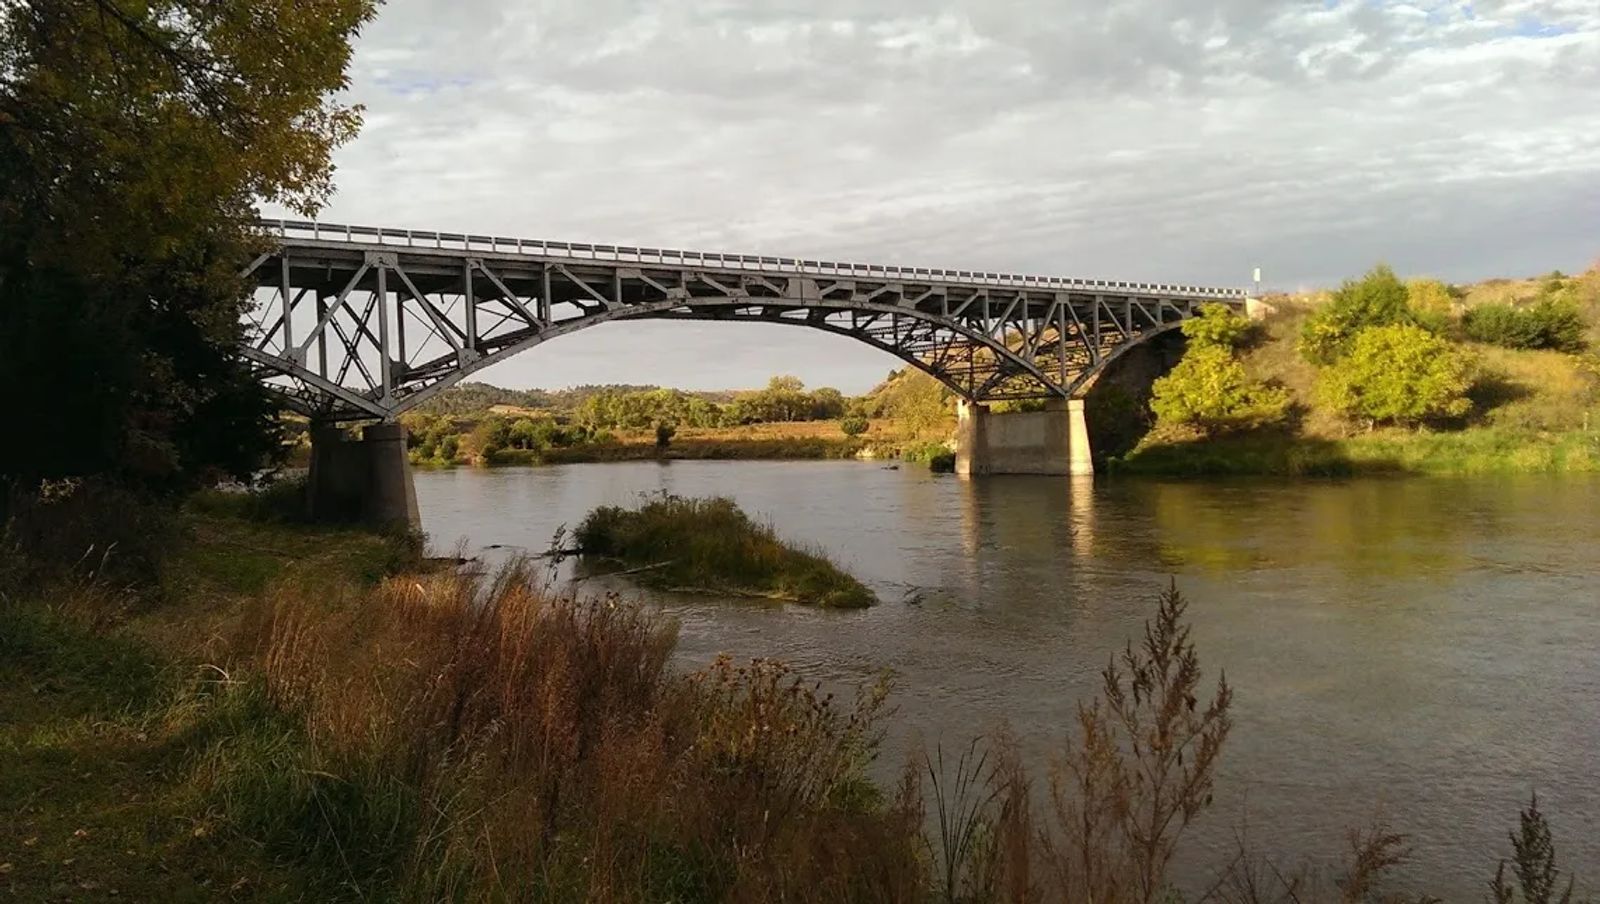 Photo of The Bryan Bridge over the Niobrara River, in Nebraska